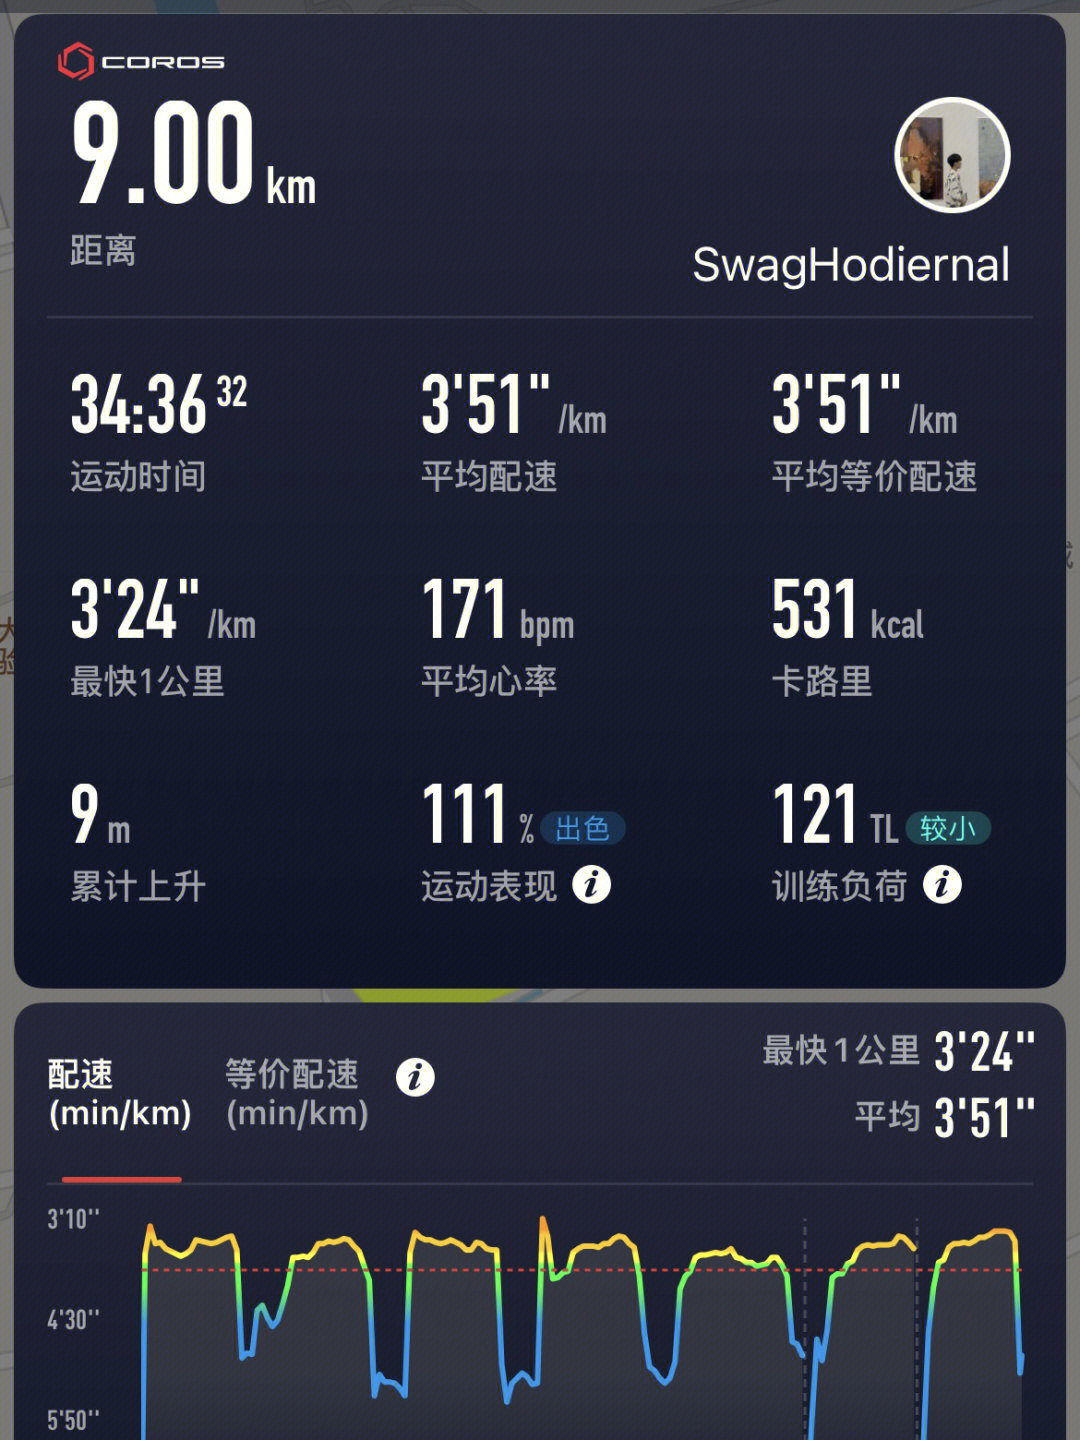 北京这两天终于回暖了 大晴天必须去跑间歇计划的热身2k776组1000m